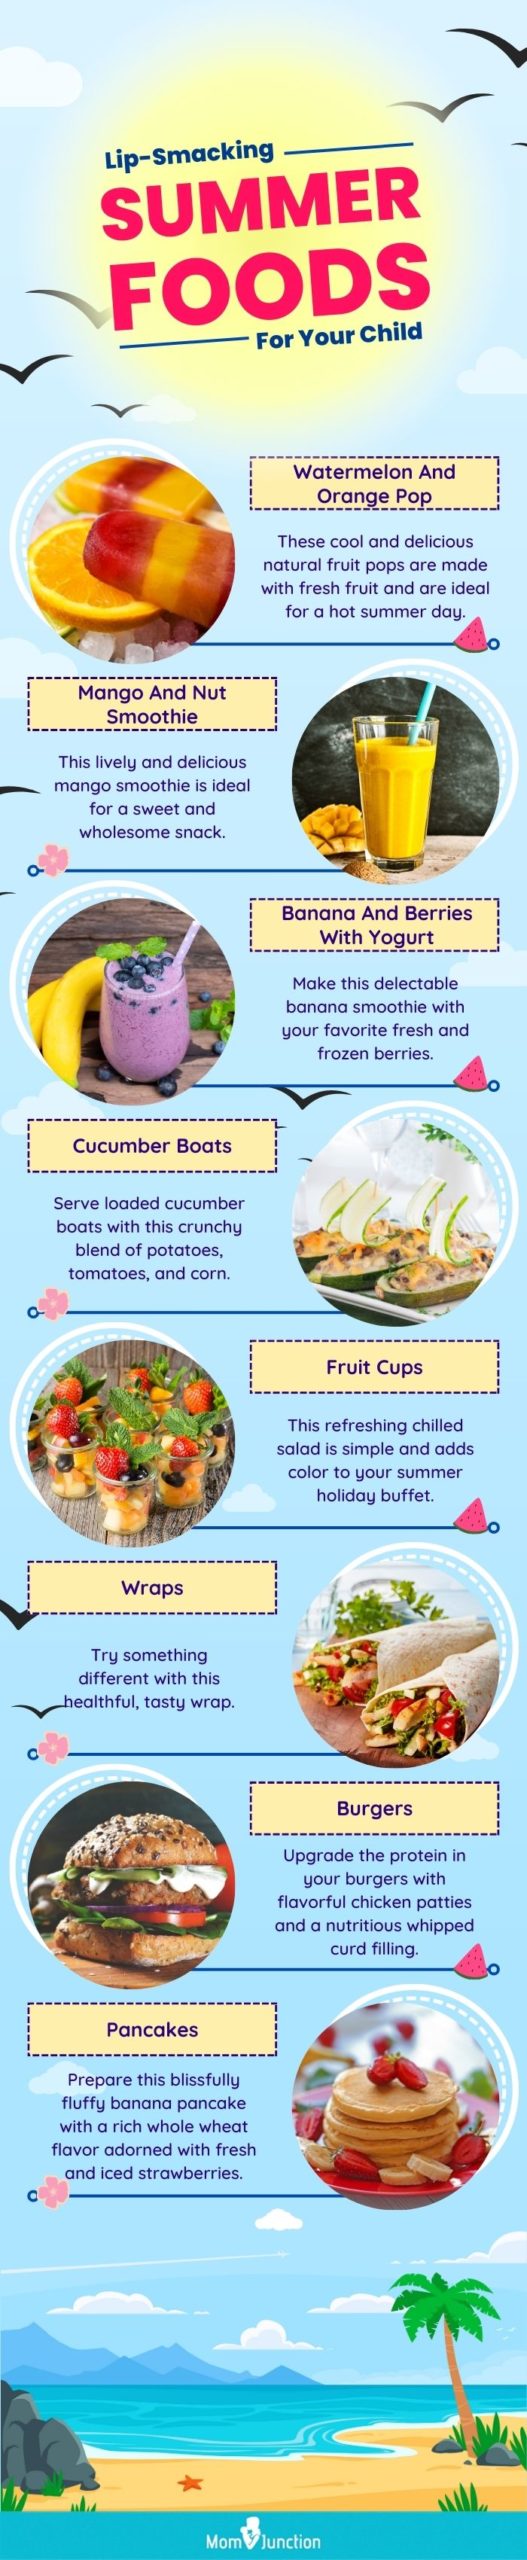 4 Summer Blender Recipes Kids Will Love